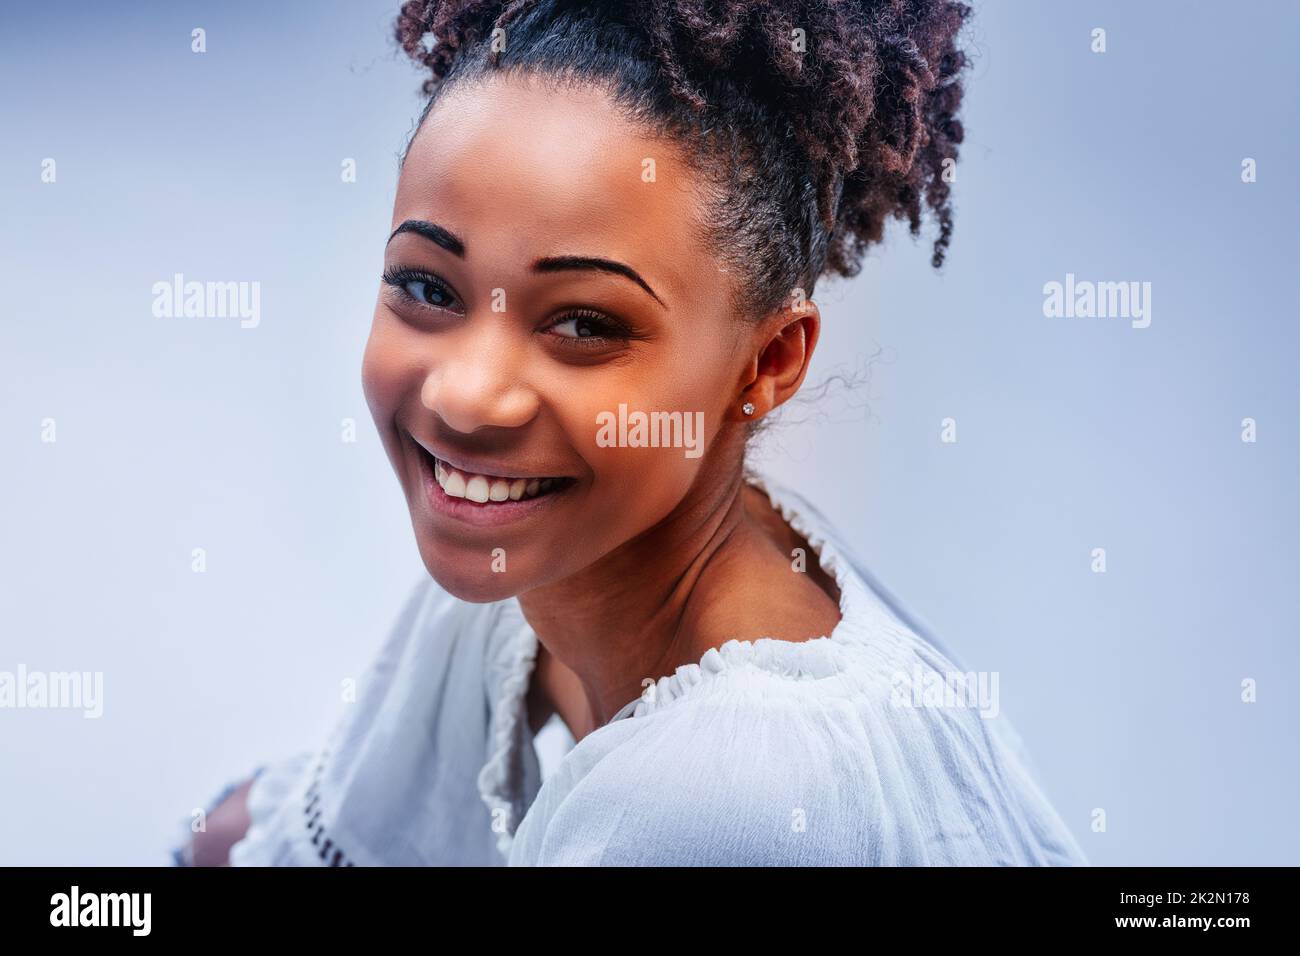 Glückliche, wunderschöne, junge schwarze Frau mit einem strahlenden Lächeln Stockfoto